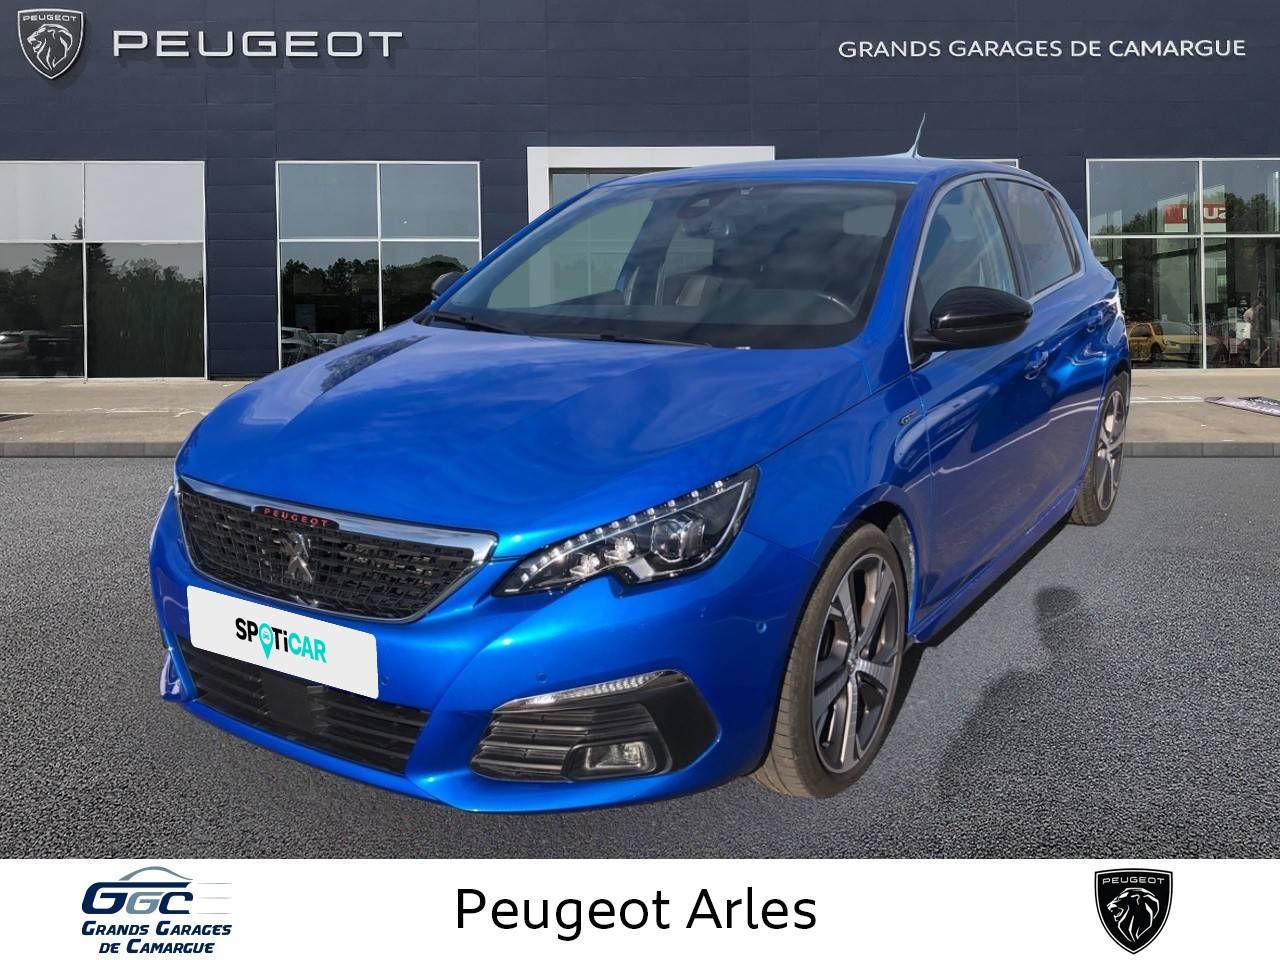 PEUGEOT 308 | 308 PureTech 130ch S&S EAT8 occasion - Peugeot Arles